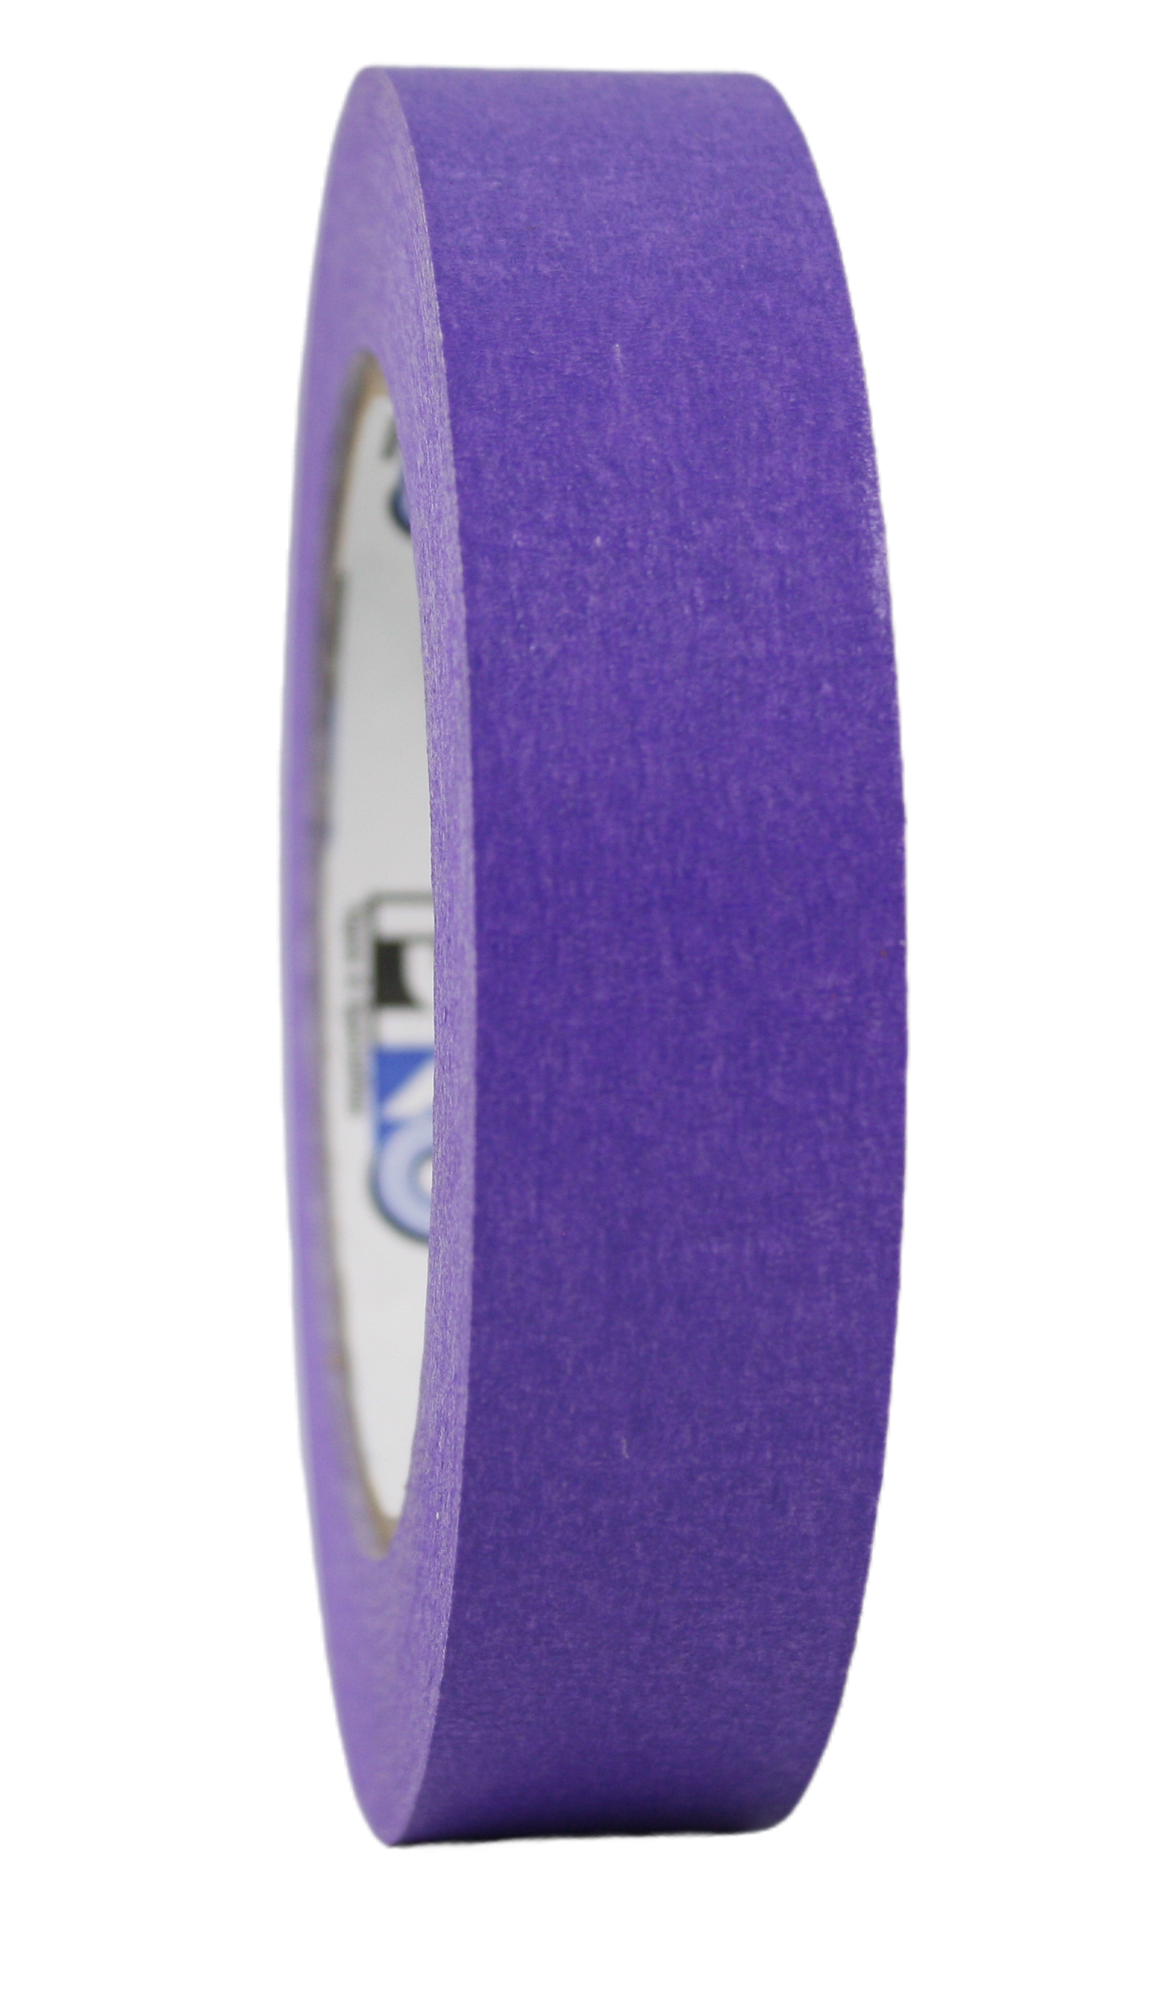 Pro 46, 1" roll, purple, side view